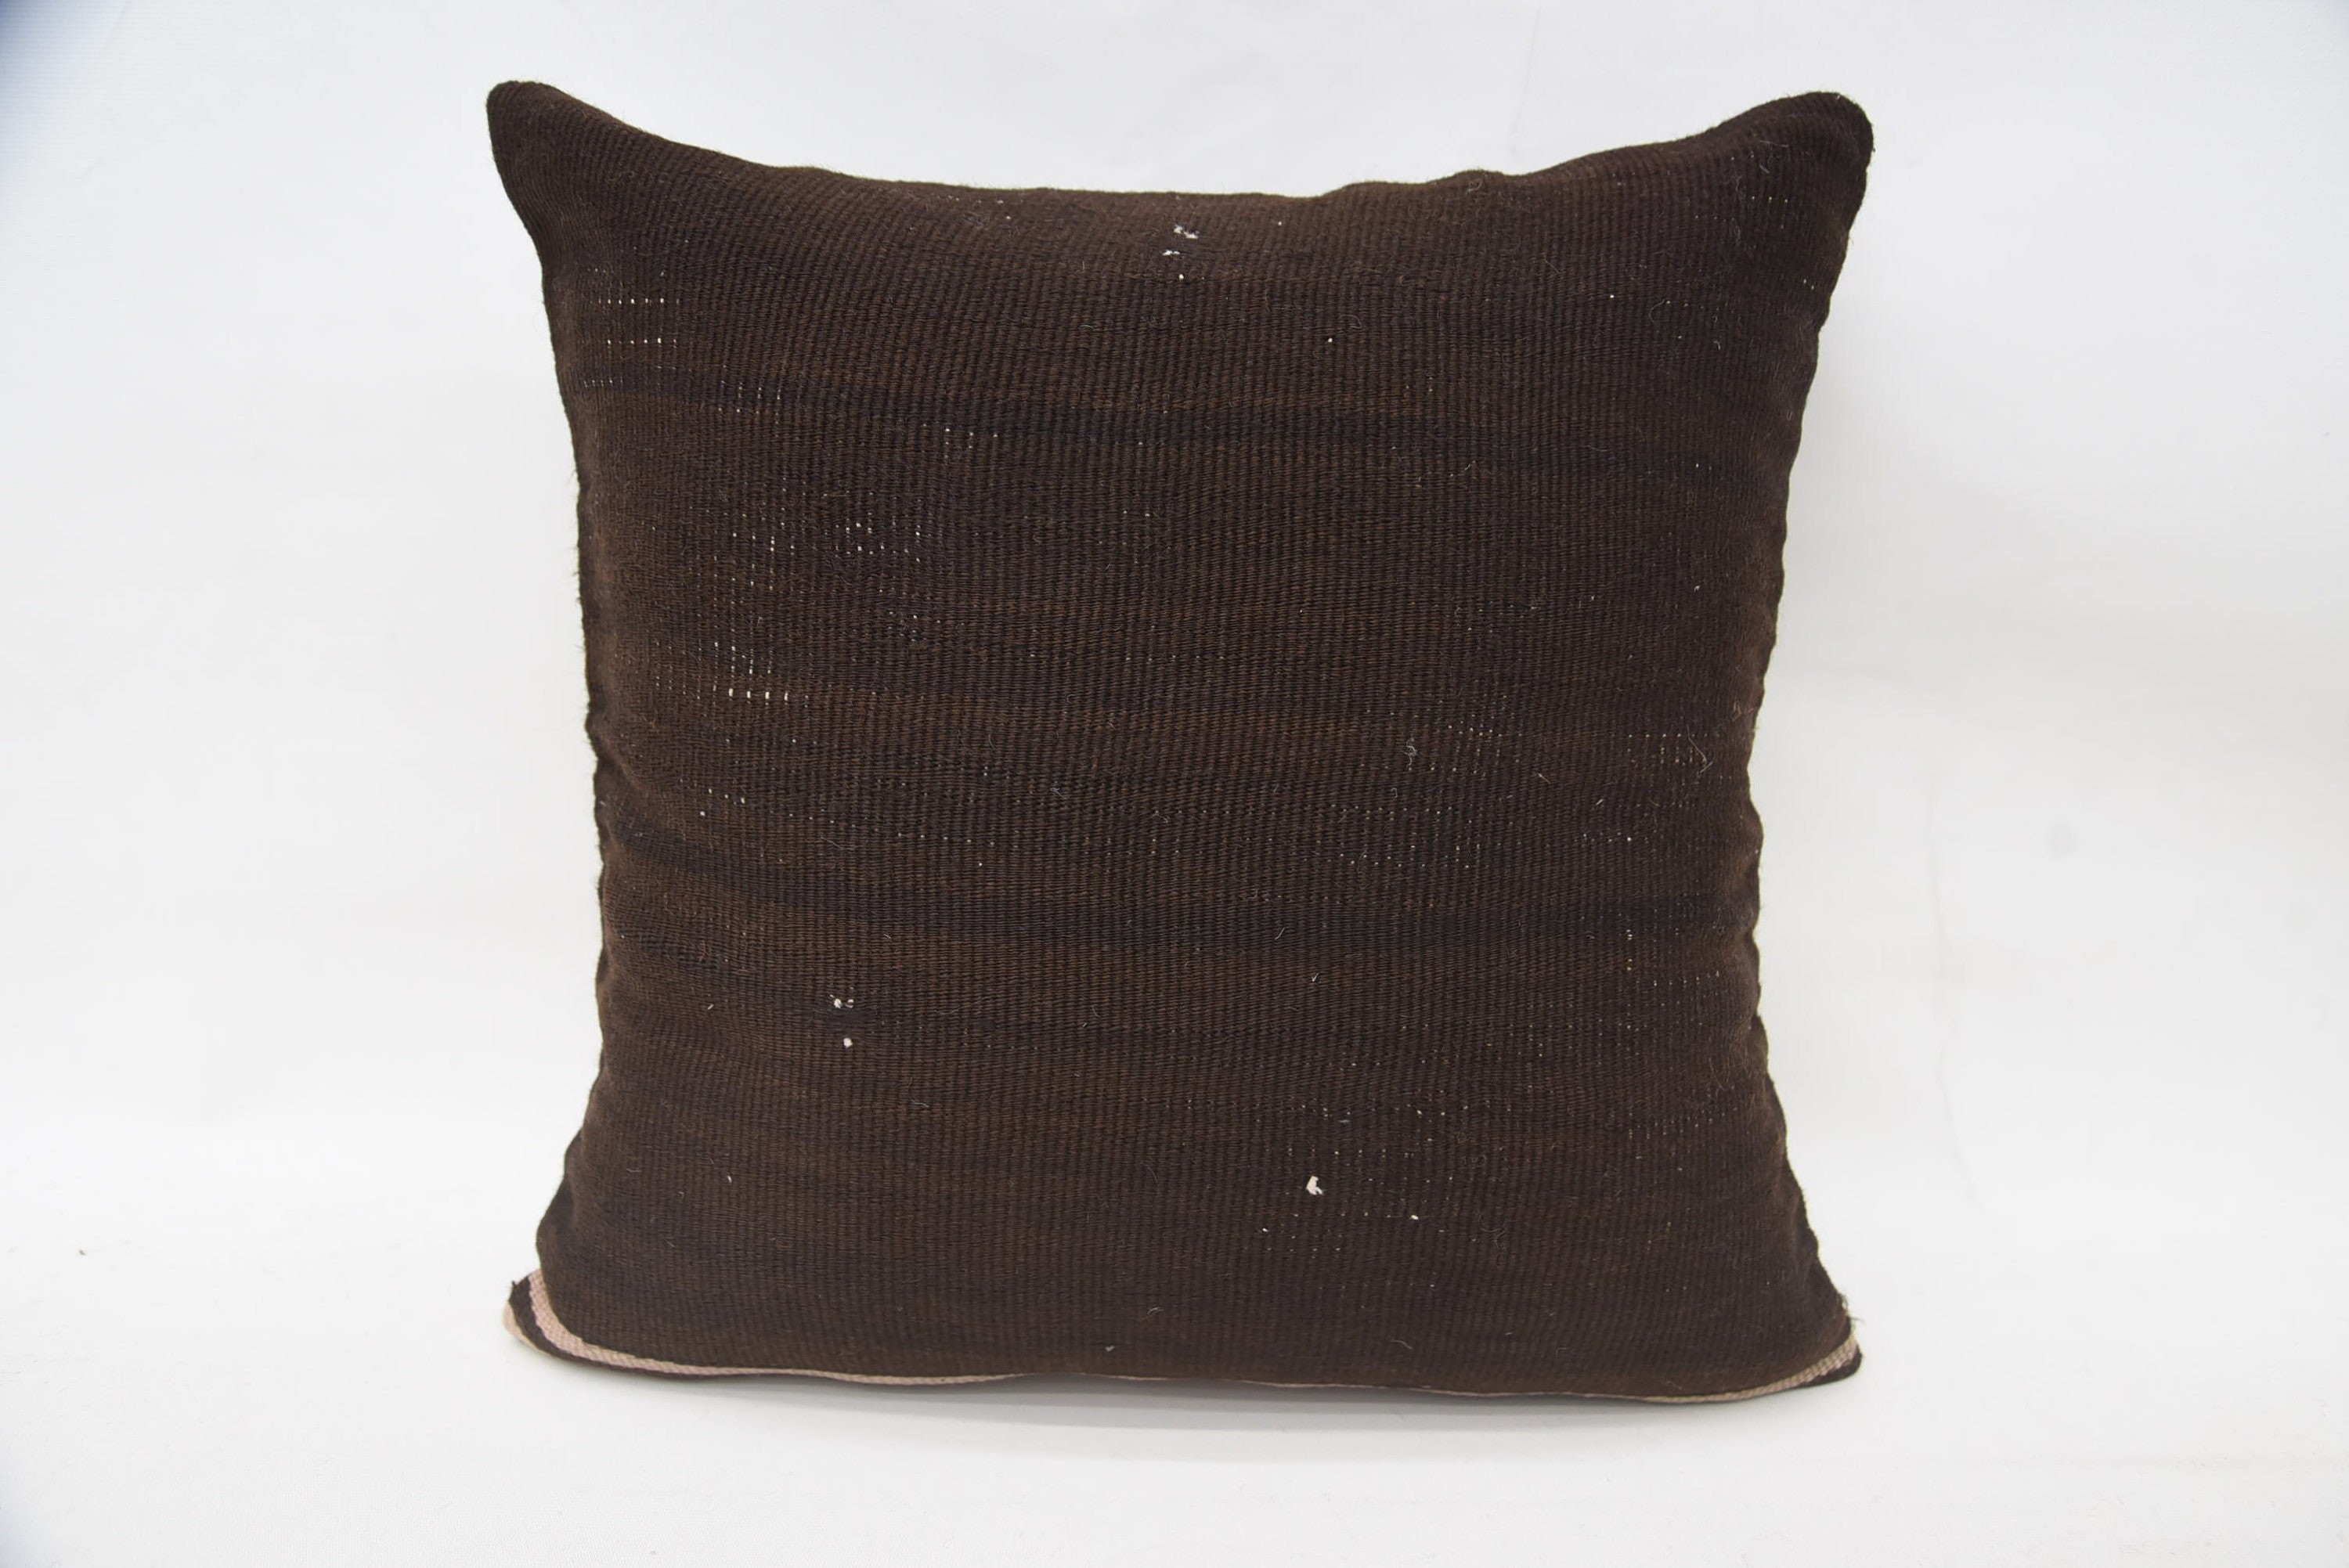 Kilim Cushion Sham, Kilim Pillow Cover, Garden Pillow, Turkish Pillow, Farmhouse Cushion Case, 18"x18" Brown Cushion Case